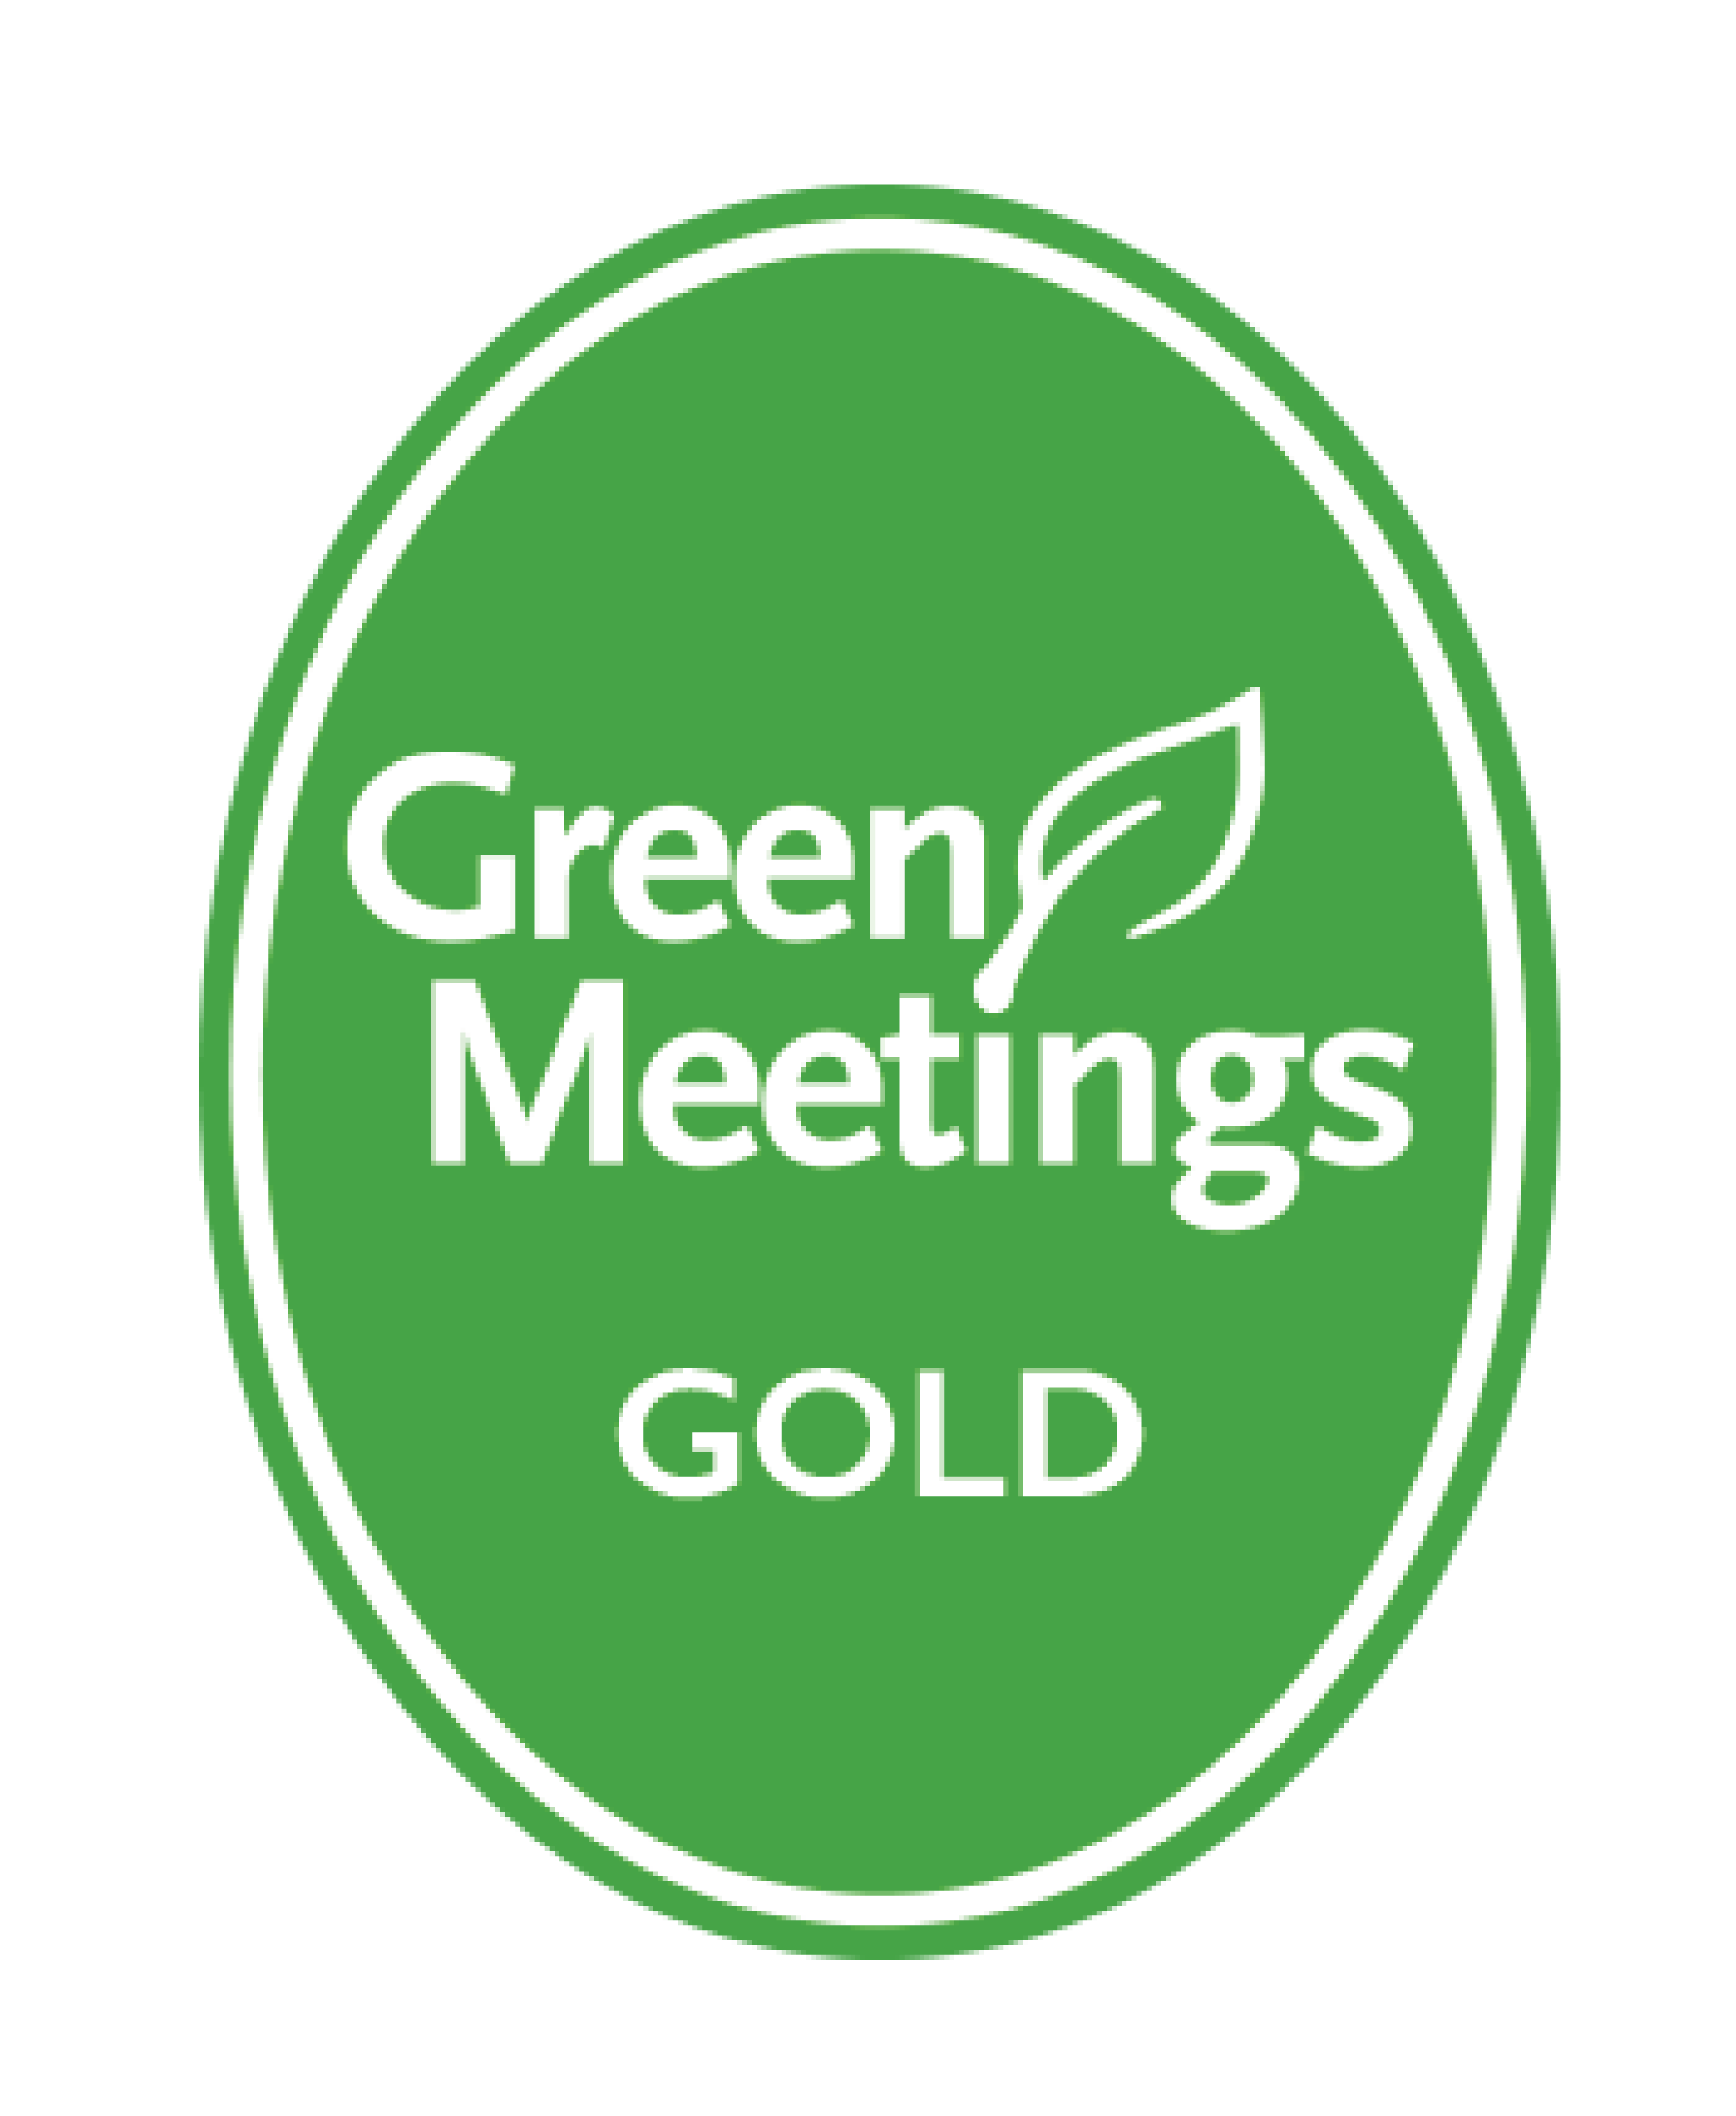 GTBS Green Meetings GOLD logo